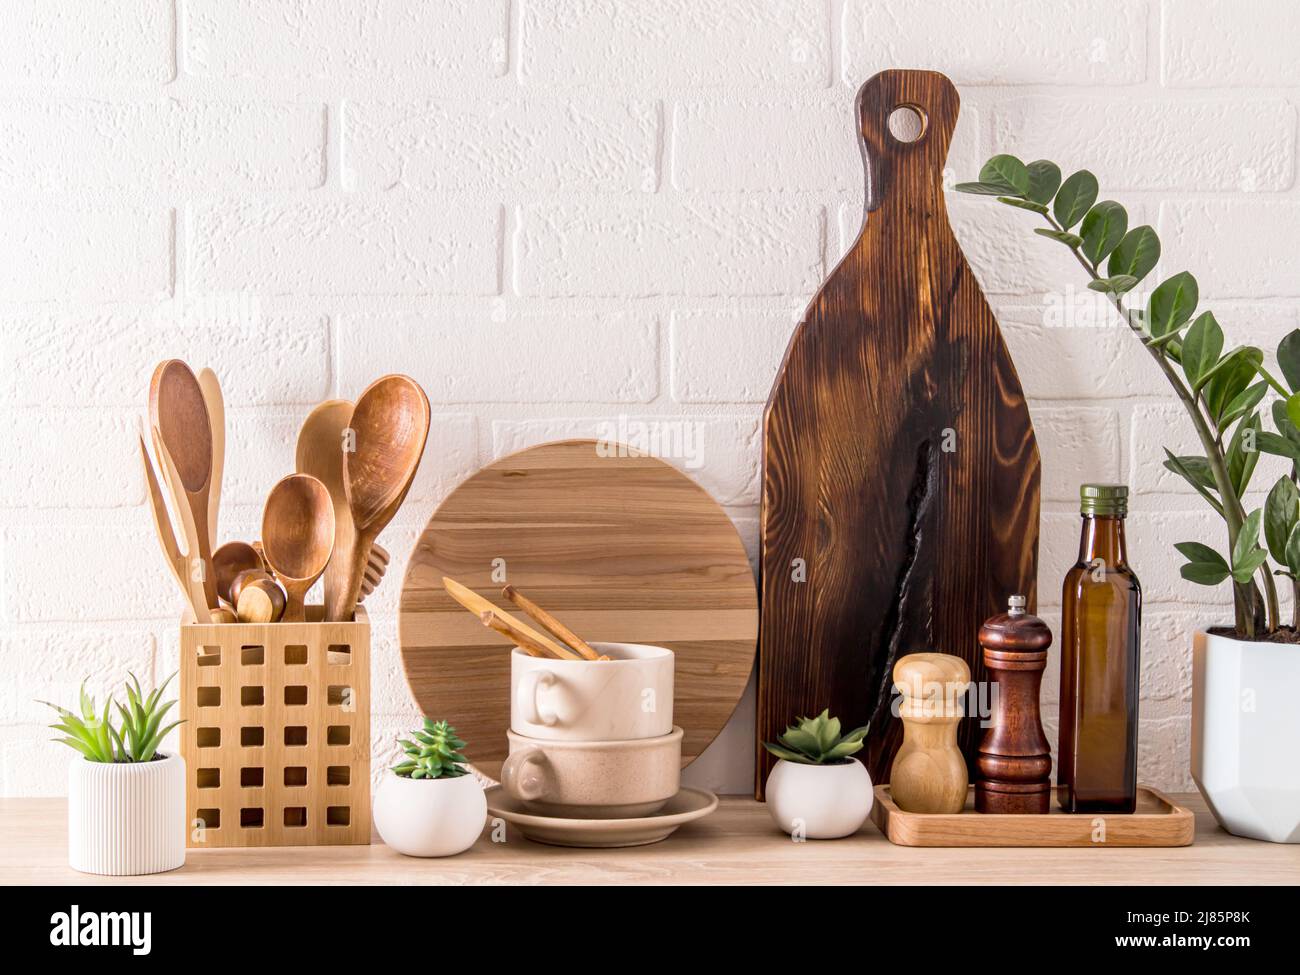 Vari tipi di utensili da cucina, tavole di legno, contenitori di spezie, verde in vaso pianta su un moderno piano di lavoro. Cucina interna alla moda Foto Stock